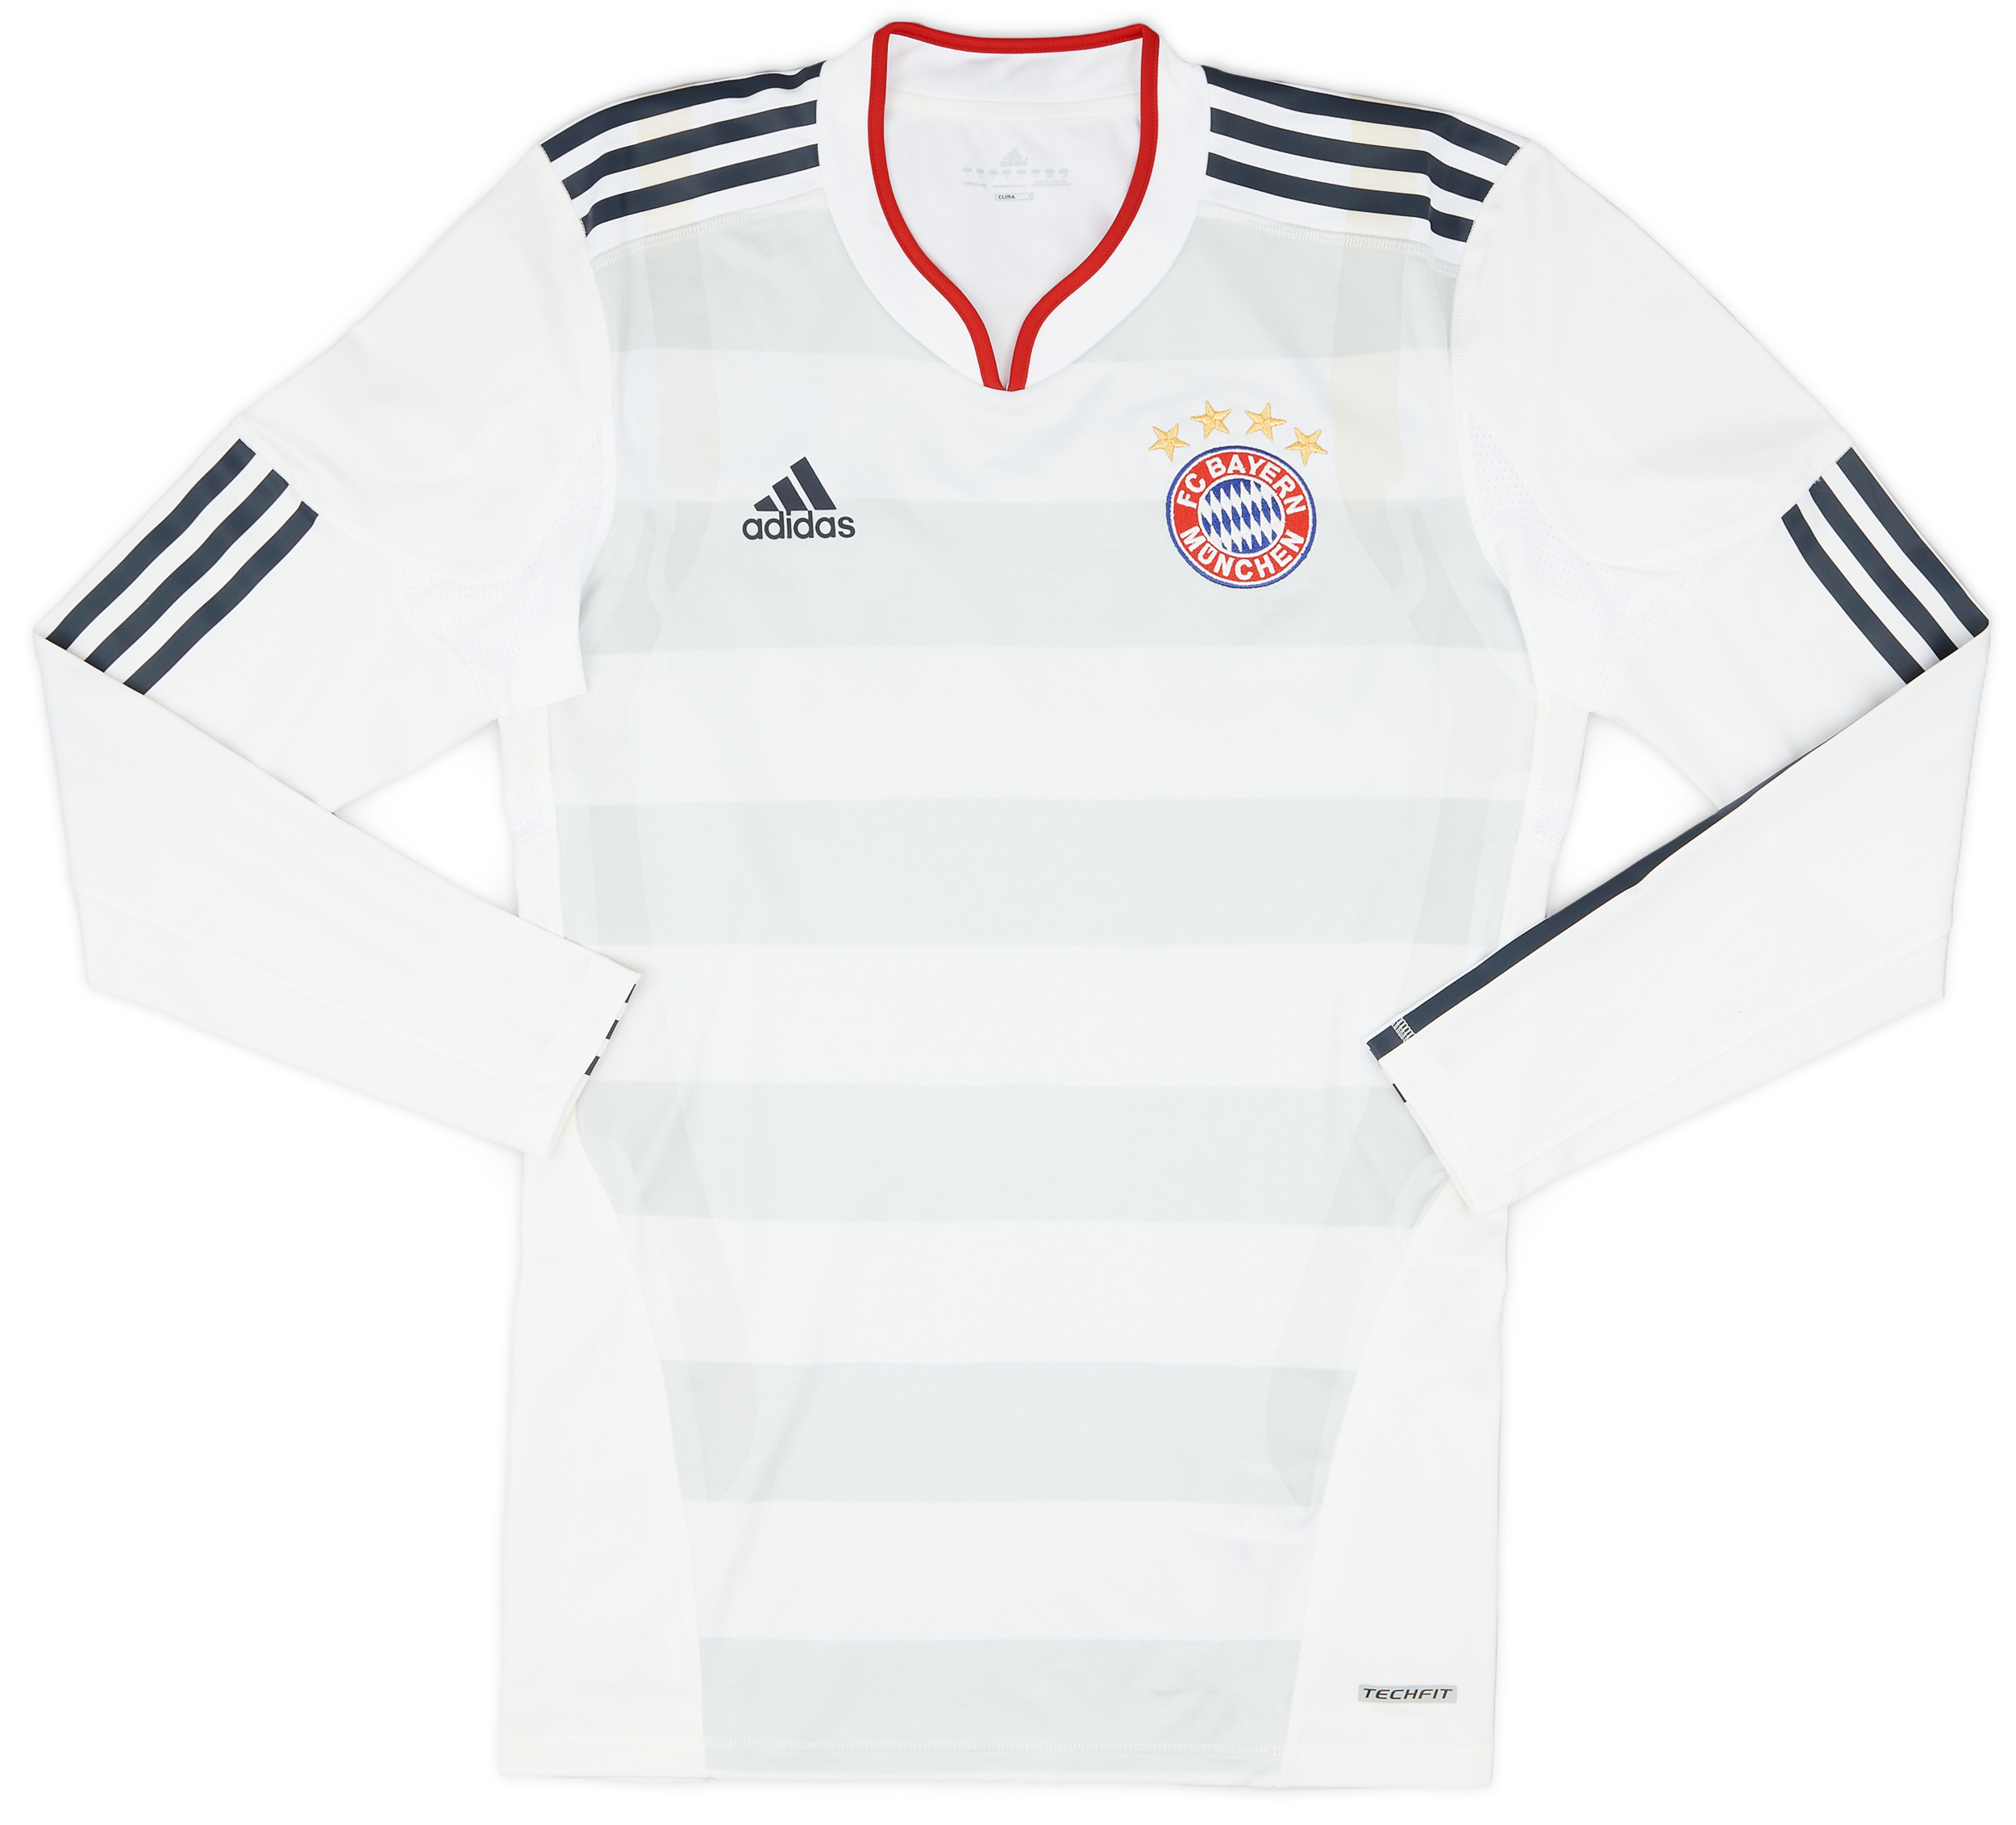 2010-11 Bayern Munich Player Issue Techfit Away Shirt - 8/10 - ()